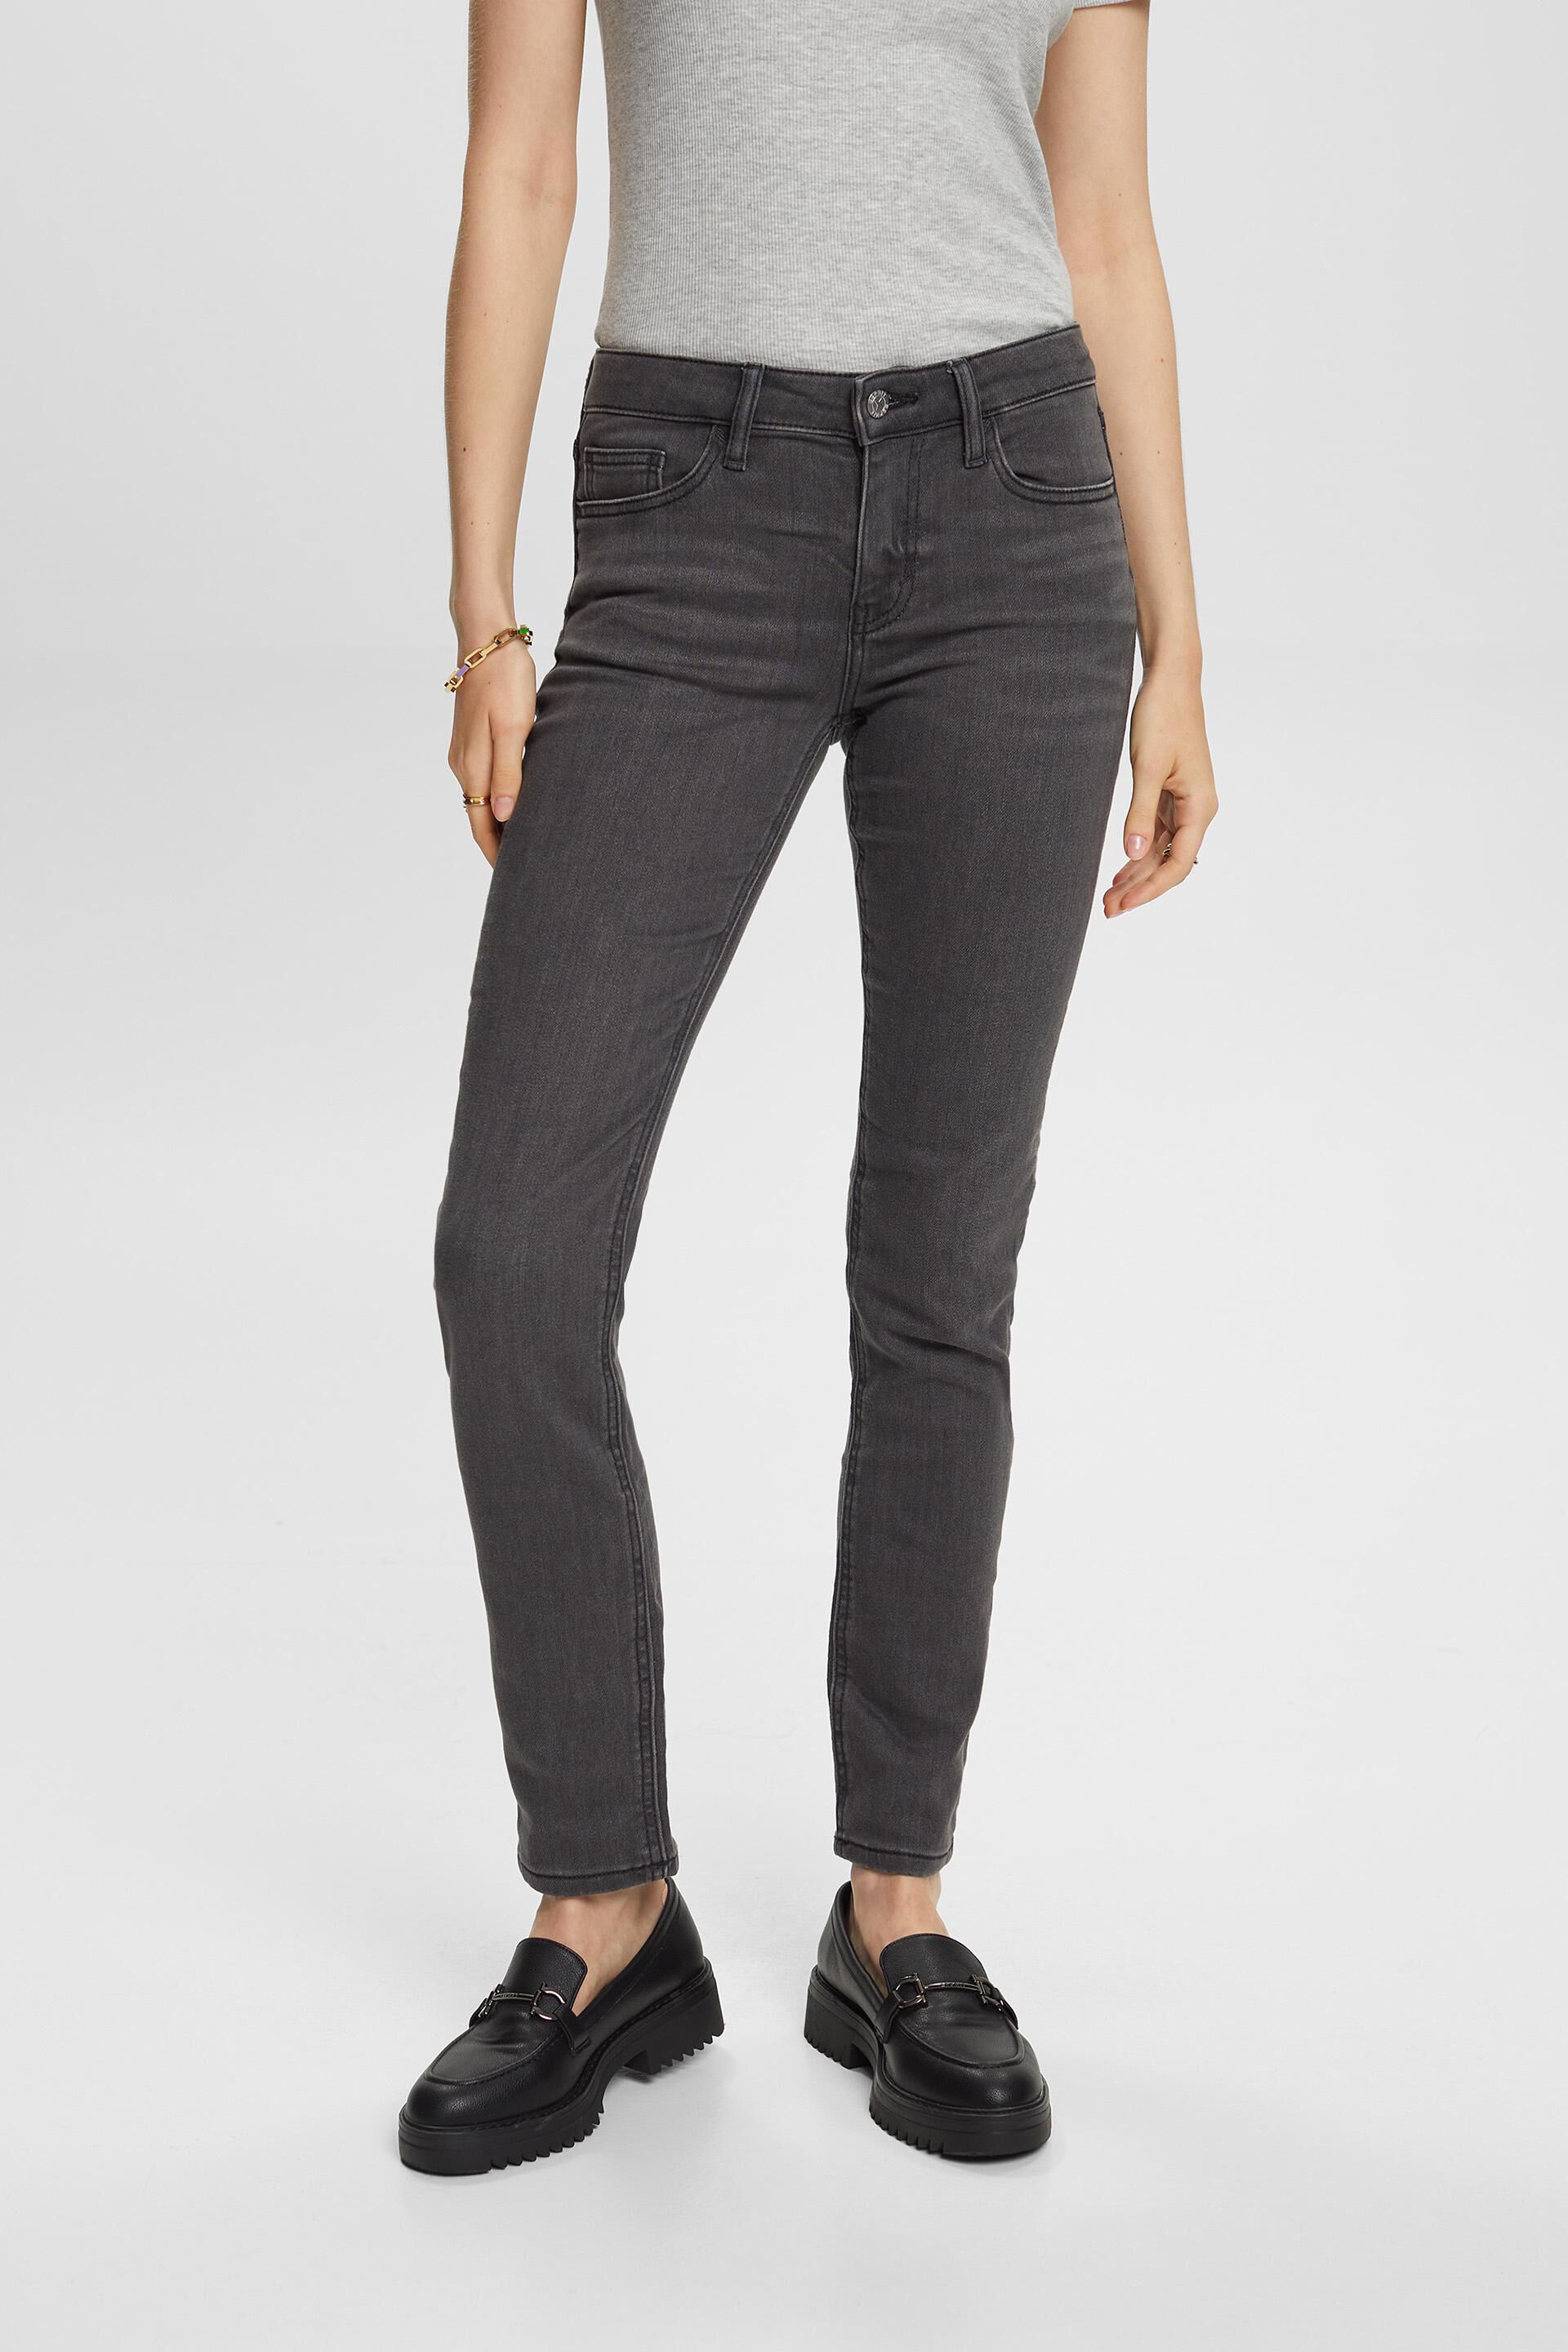 Esprit Damen Slim fit stretch jeans